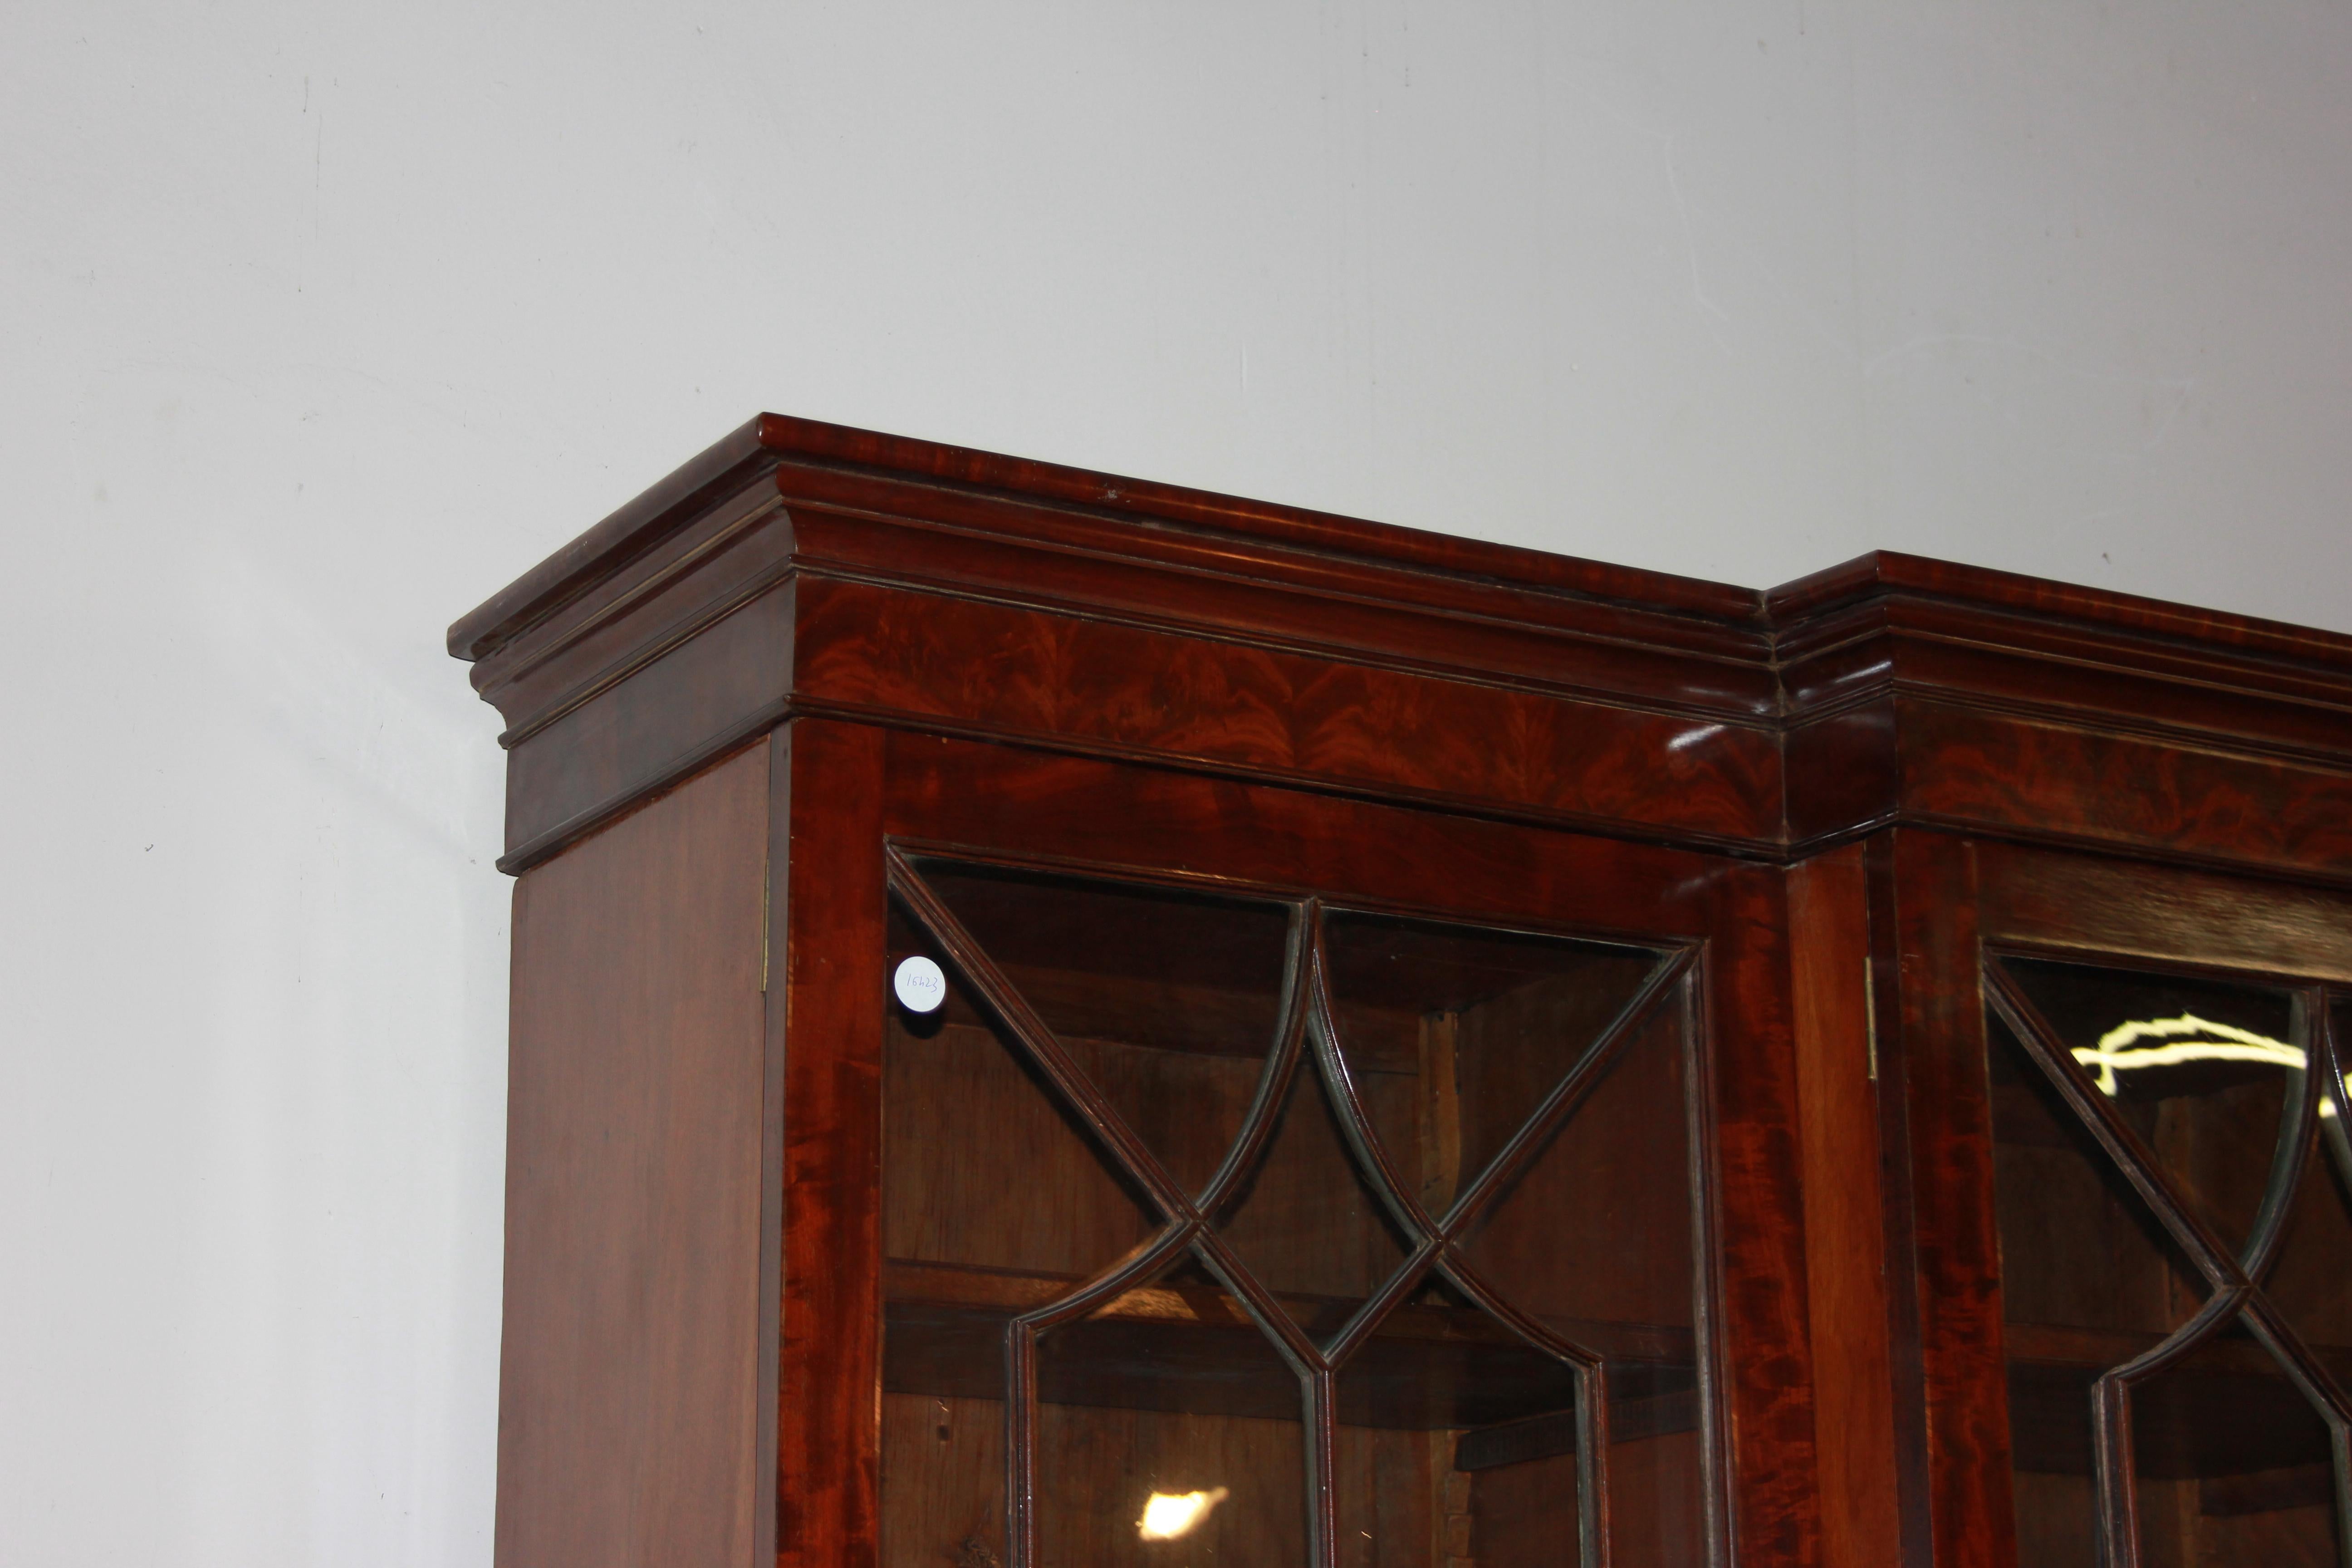 Grande bibliothèque anglaise du milieu des années 1800, de style Regency, en bois d'acajou et plumes d'acajou. Il comporte 4 portes vitrées, 4 portes fermées et est équipé de tiroirs au centre.

Origine : Angleterre

Époque : Milieu des années